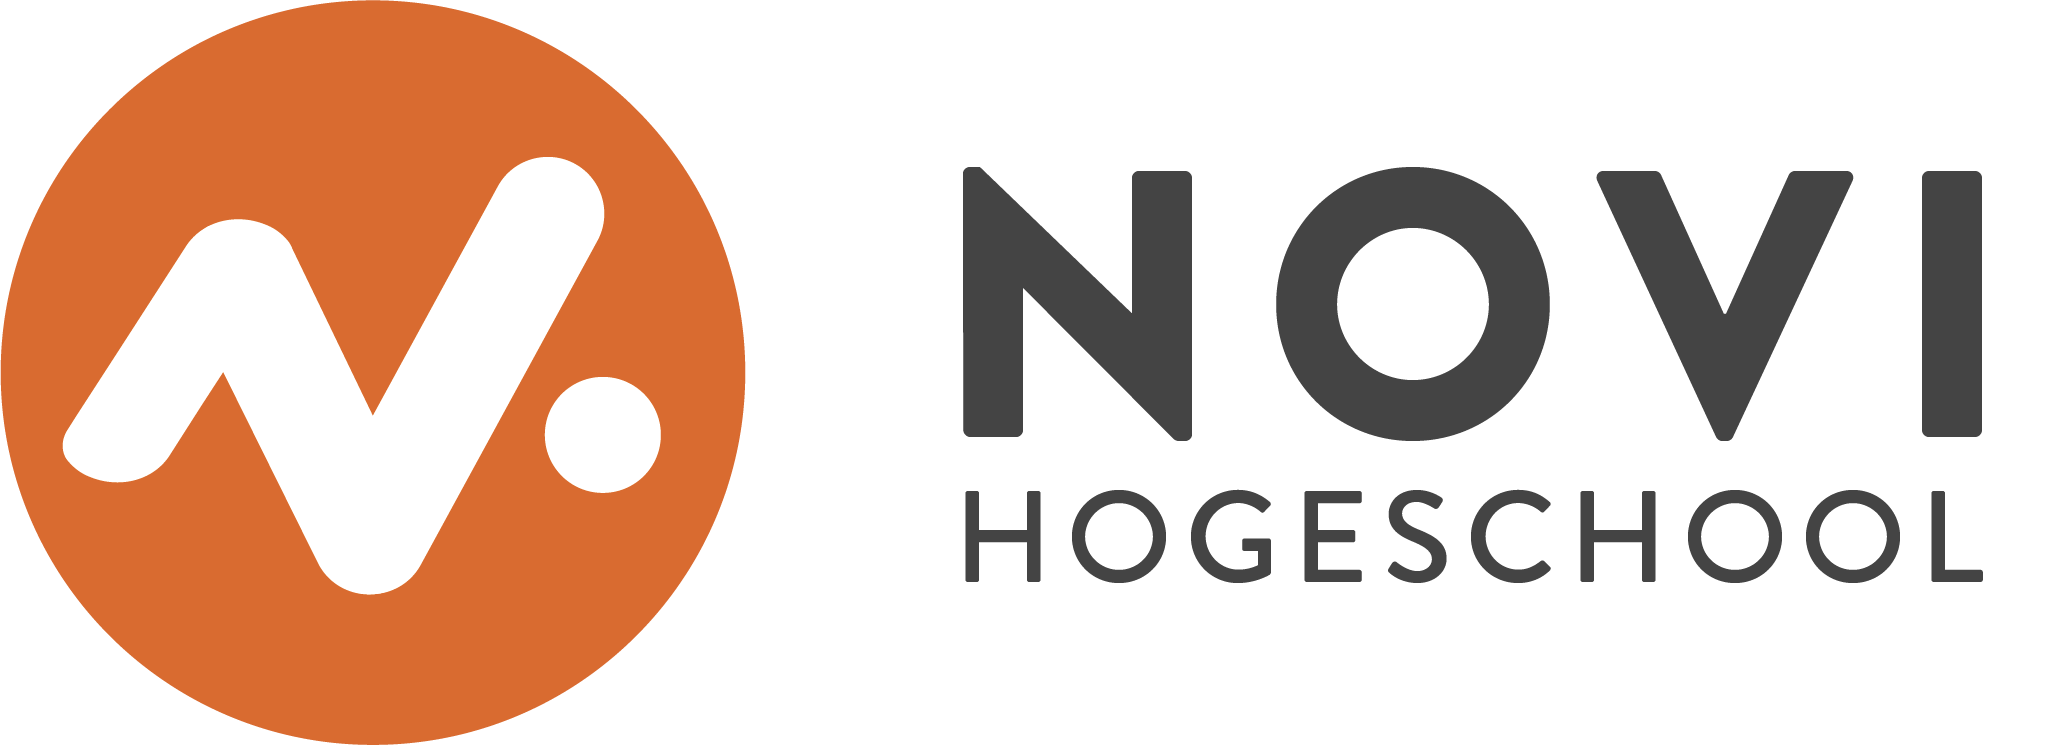 NOVI logo1-1